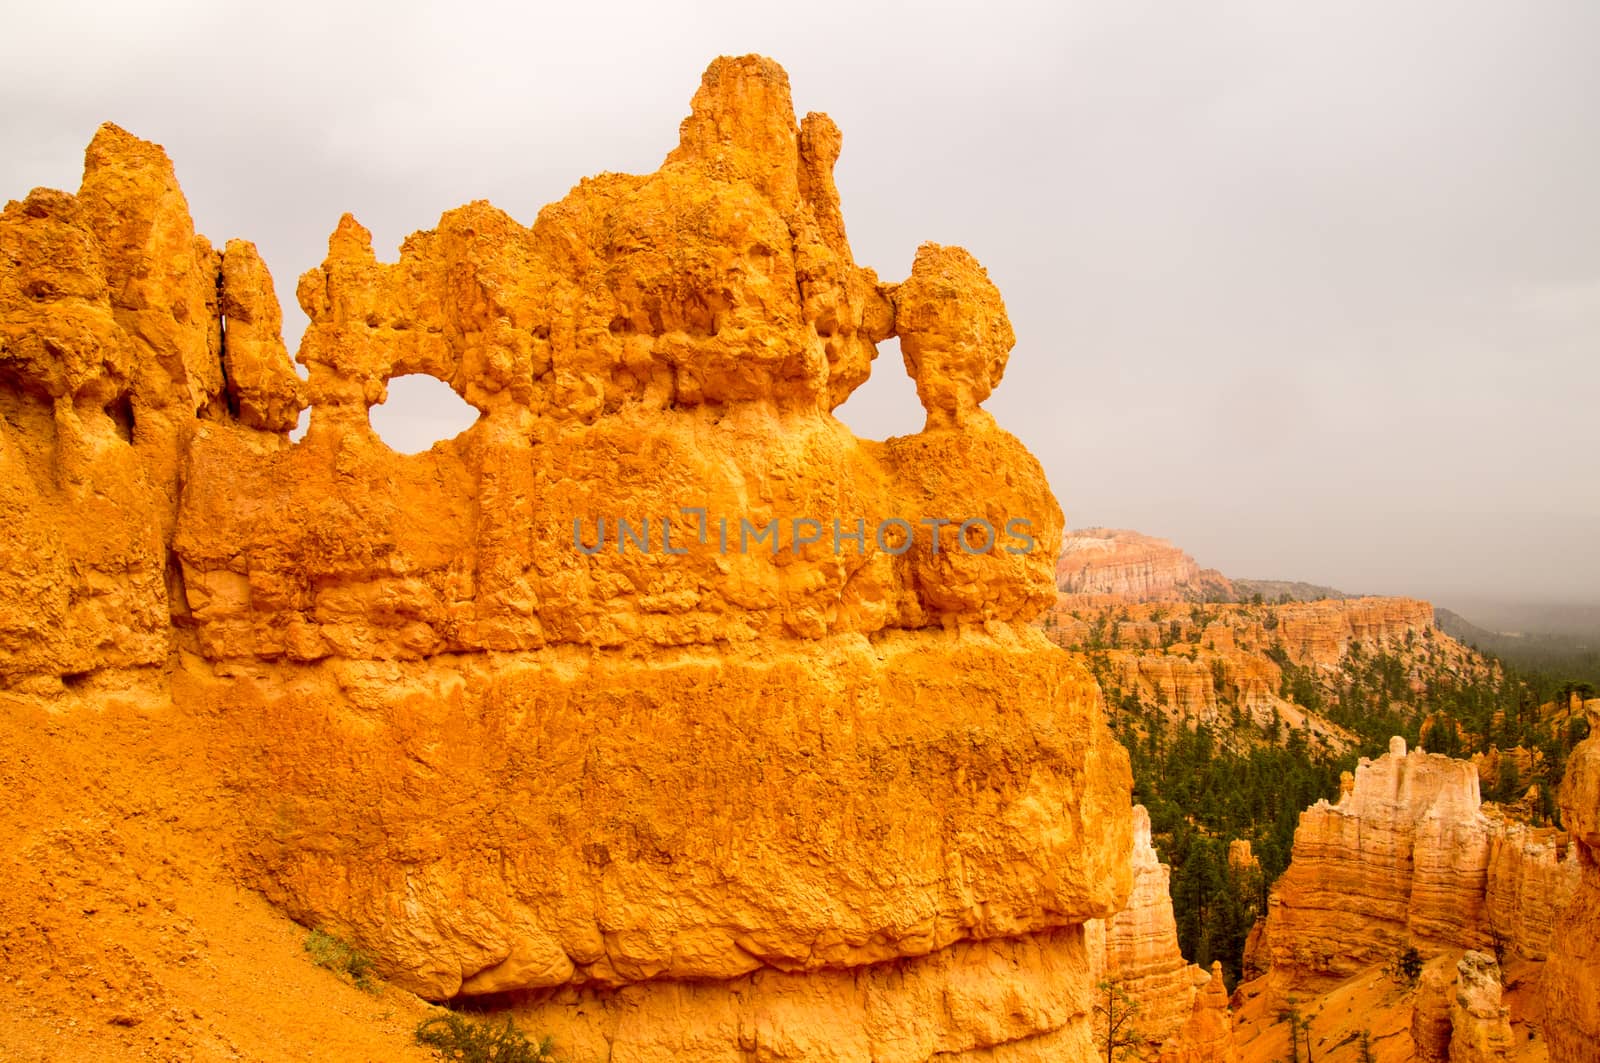 Bryce Canyon rock formations, Utah USA